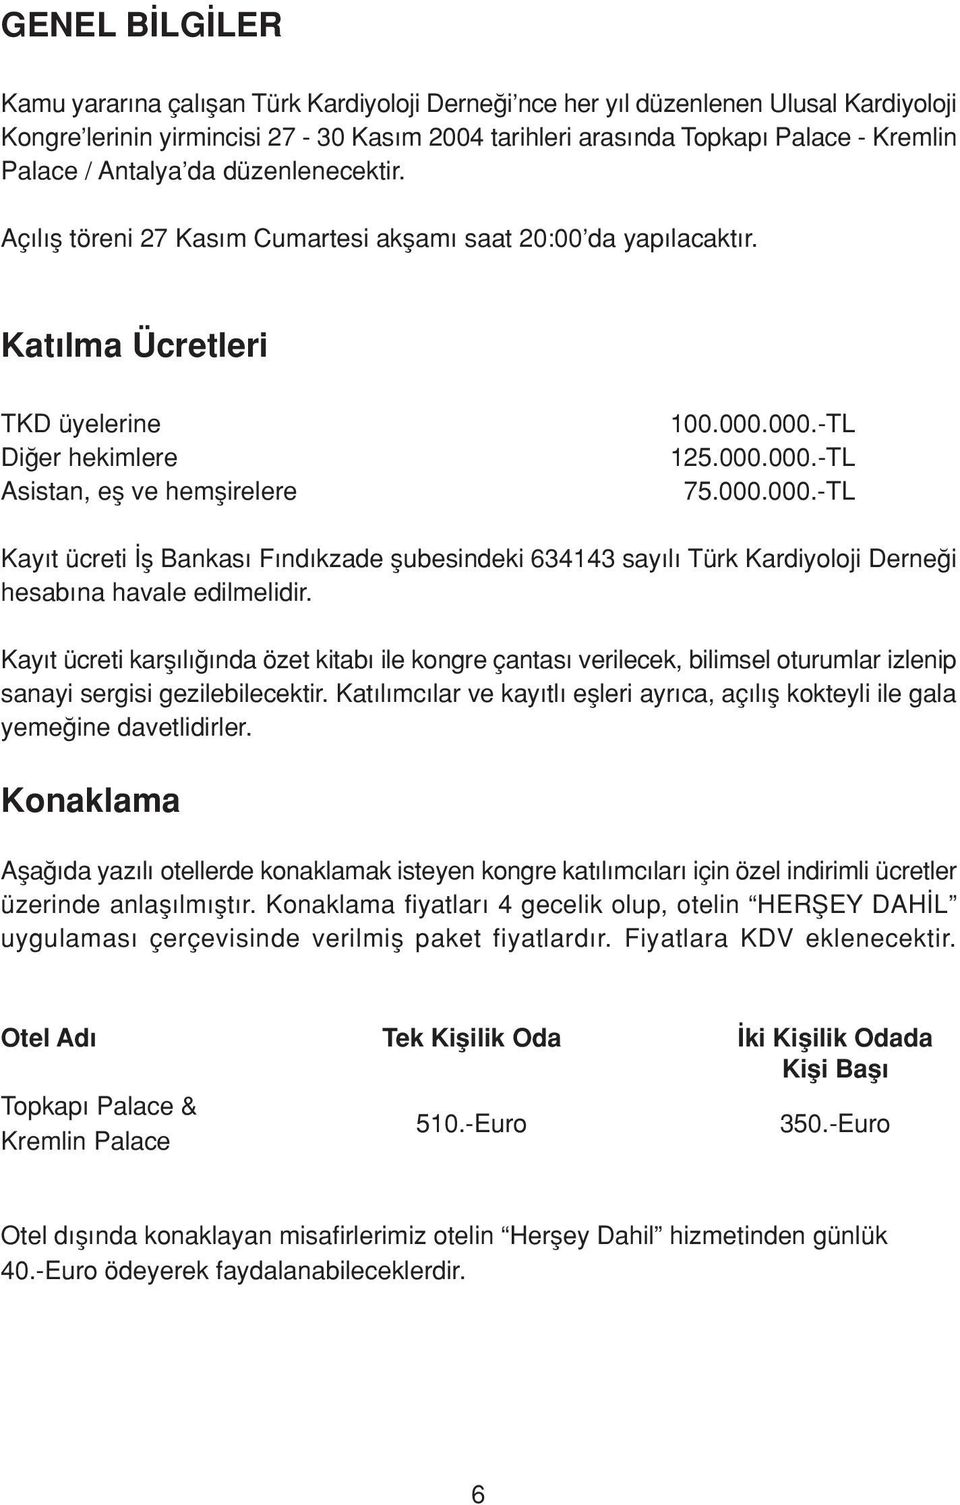 000.000.-TL Kay t ücreti fl Bankas F nd kzade flubesindeki 634143 say l Türk Kardiyoloji Derne i hesab na havale edilmelidir.